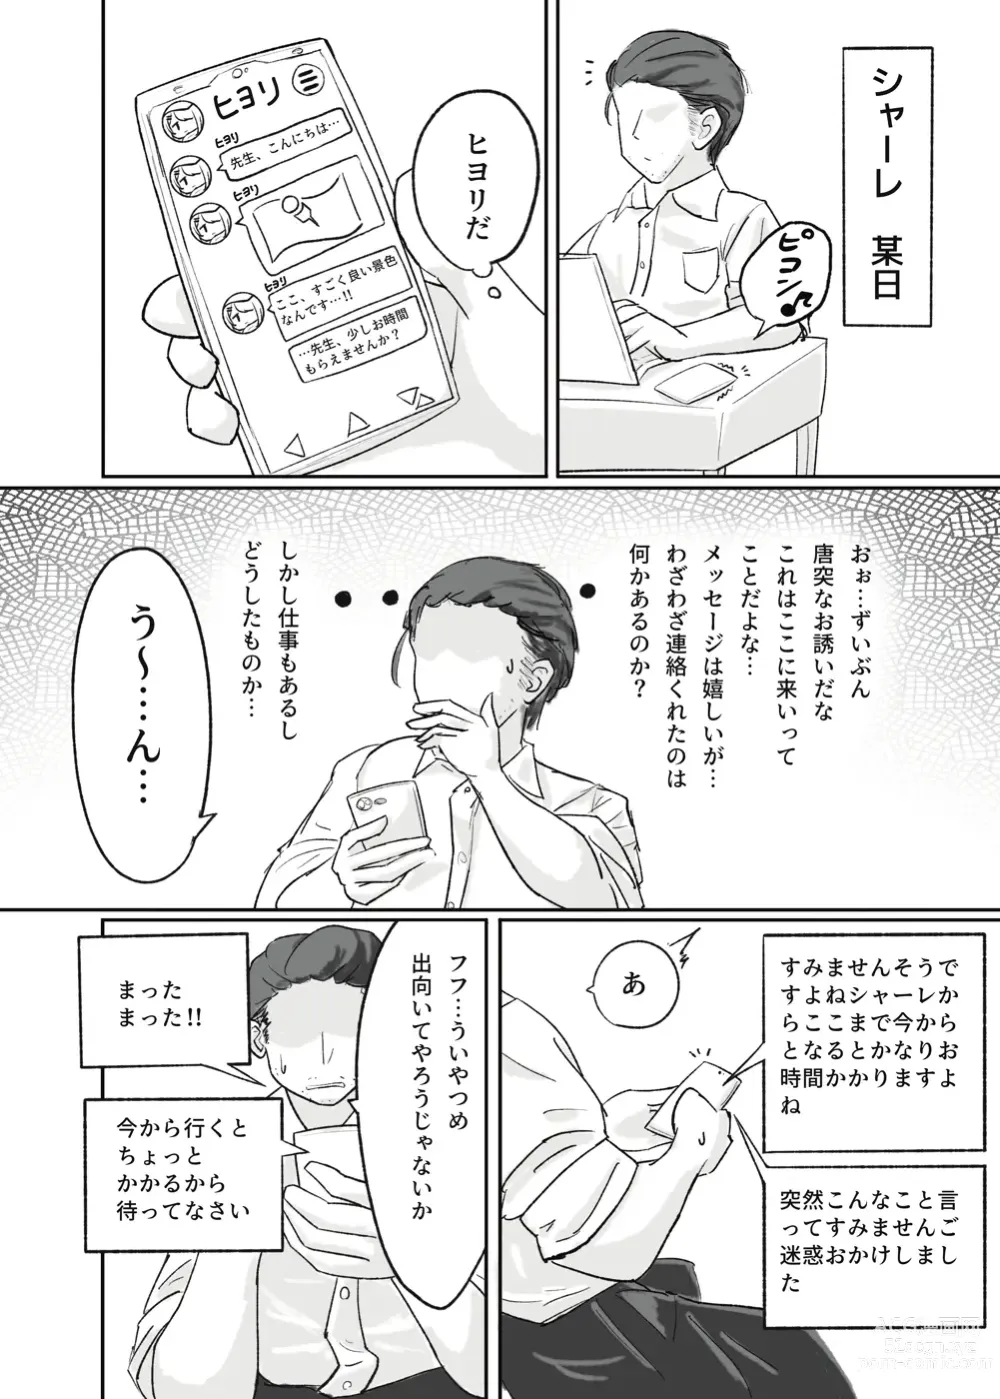 Page 3 of doujinshi Haikyo Kkusu ga Niau Onna